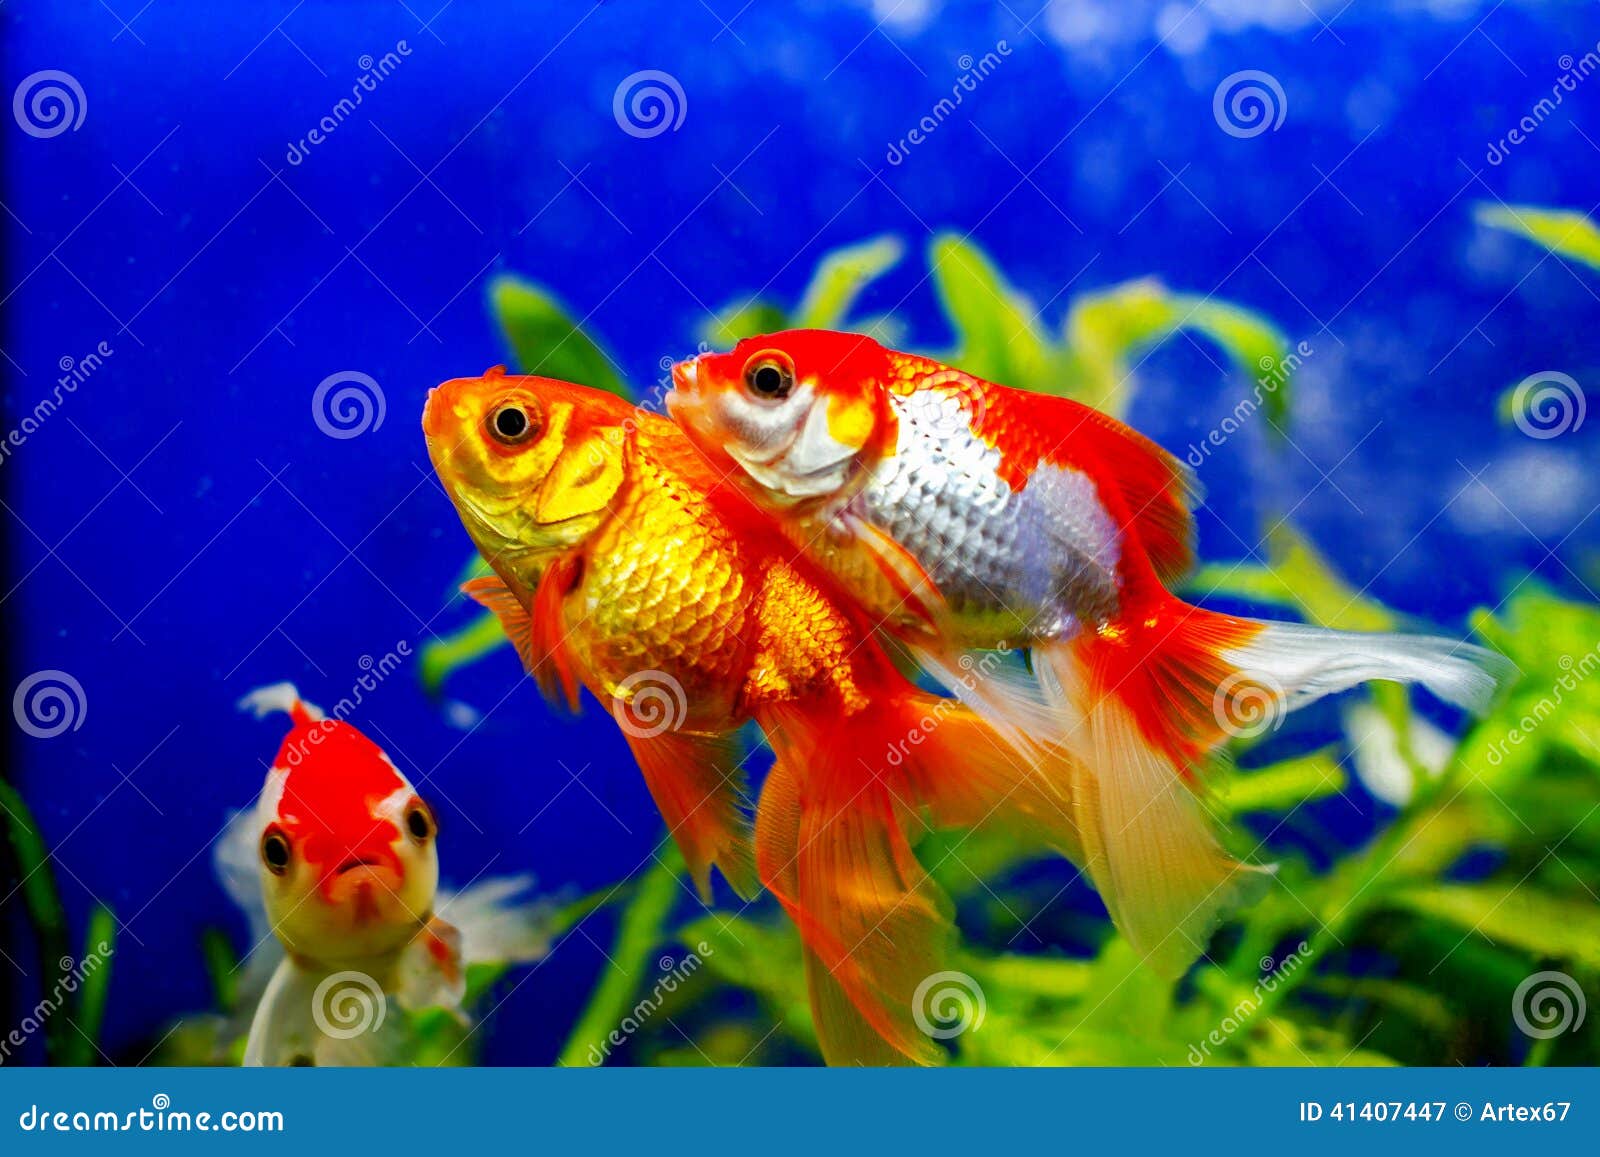 Beautiful Golden Aquarium Fish Stock Image - Image of indoors